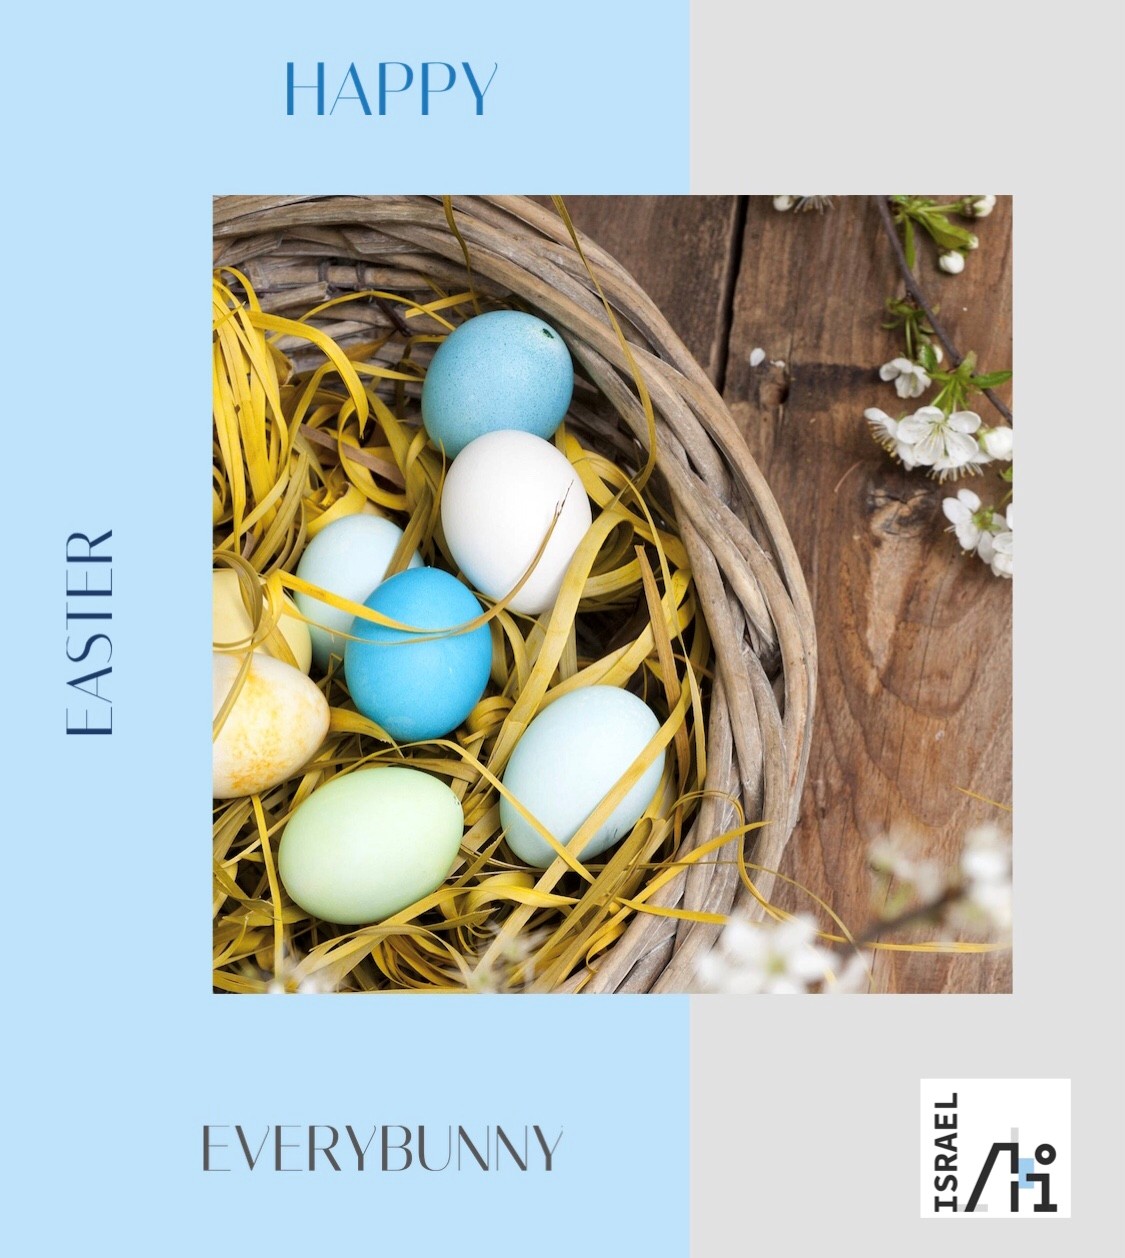 Wir wünschen euch allen ein frohes Osterfest mit maximaler Erholung!